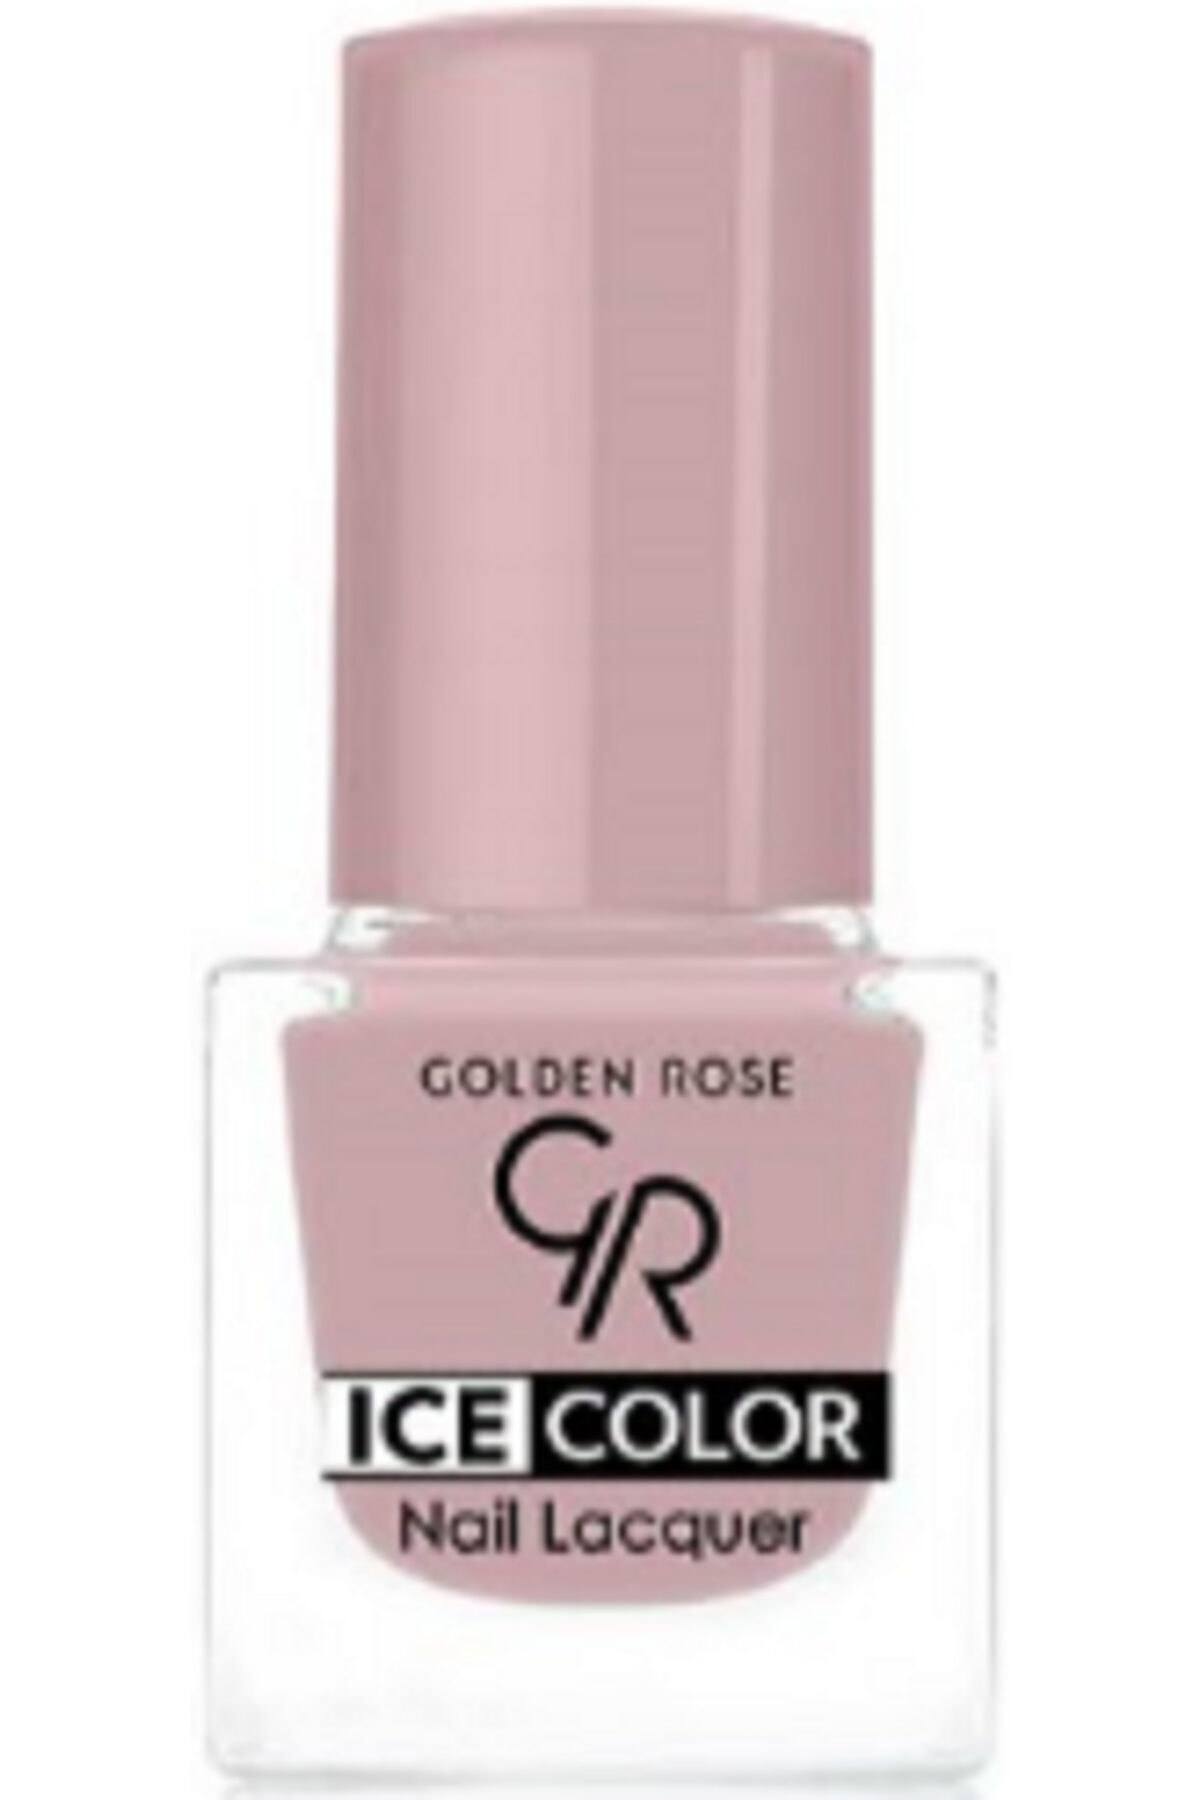 لاک ناخن یخی آیس چیک ICE شماره 136 رنگ صورتی گلدن رز Golden Rose